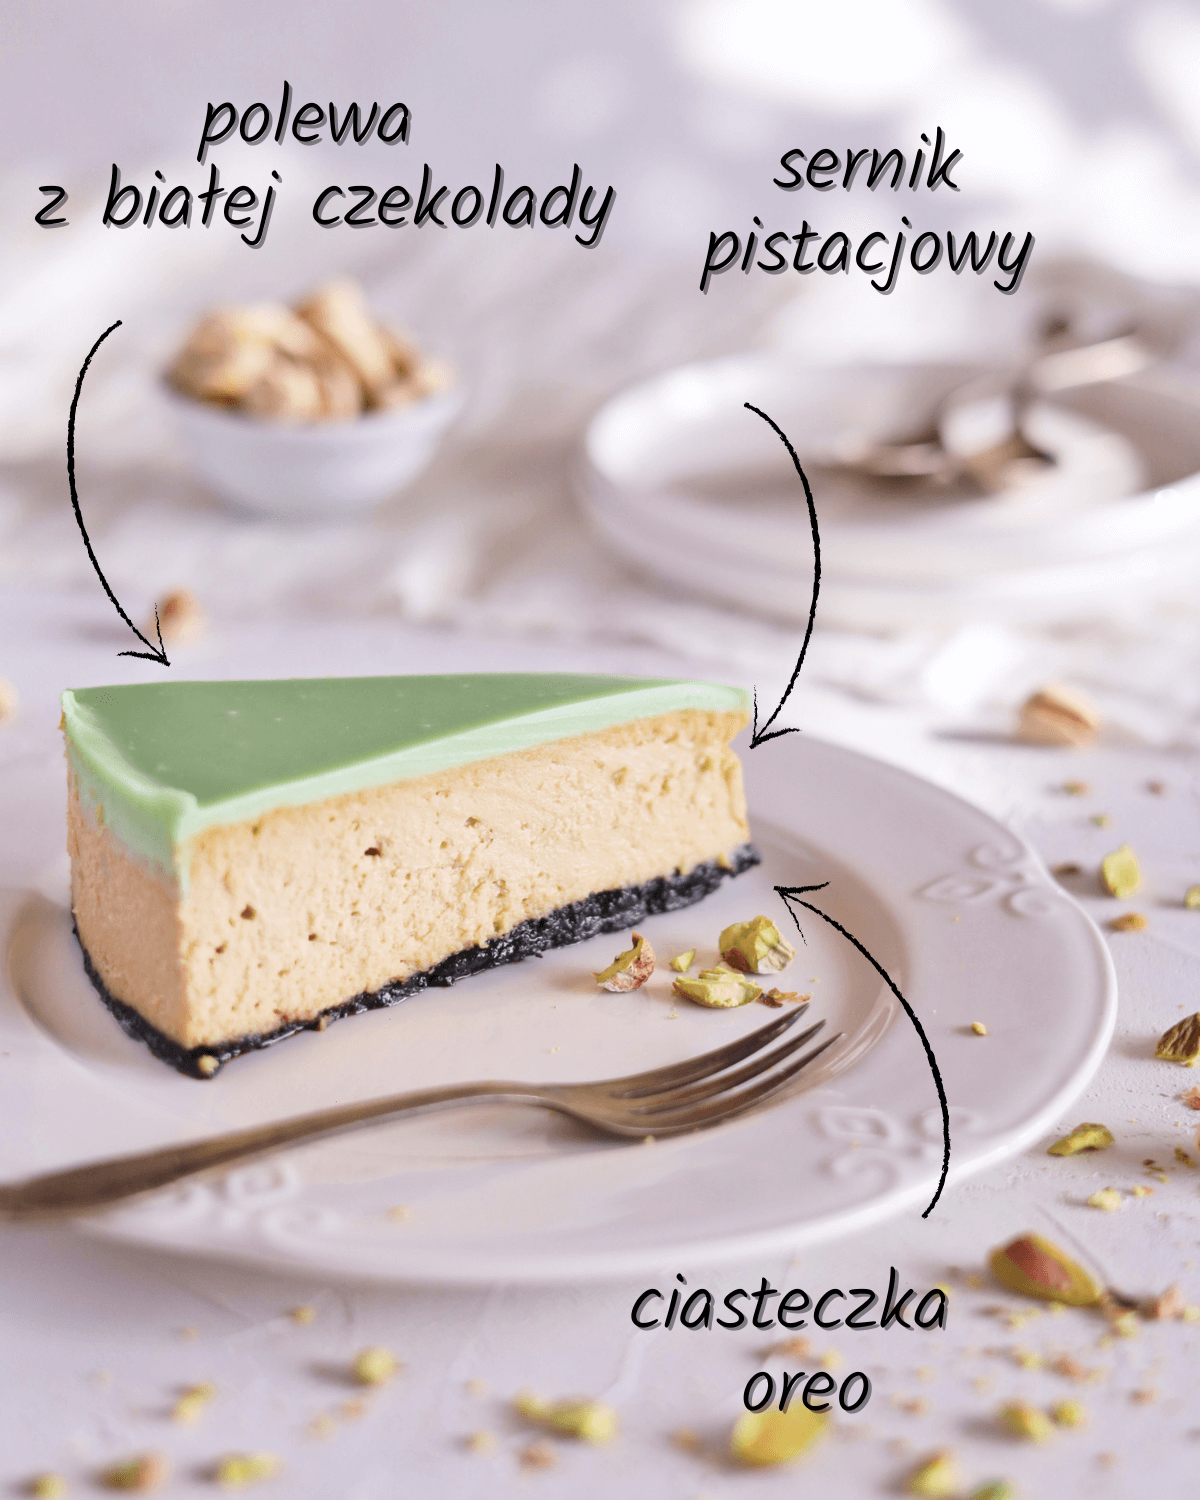 Deser w kształcie choinki - przepis na idealny sernik pistacjowy